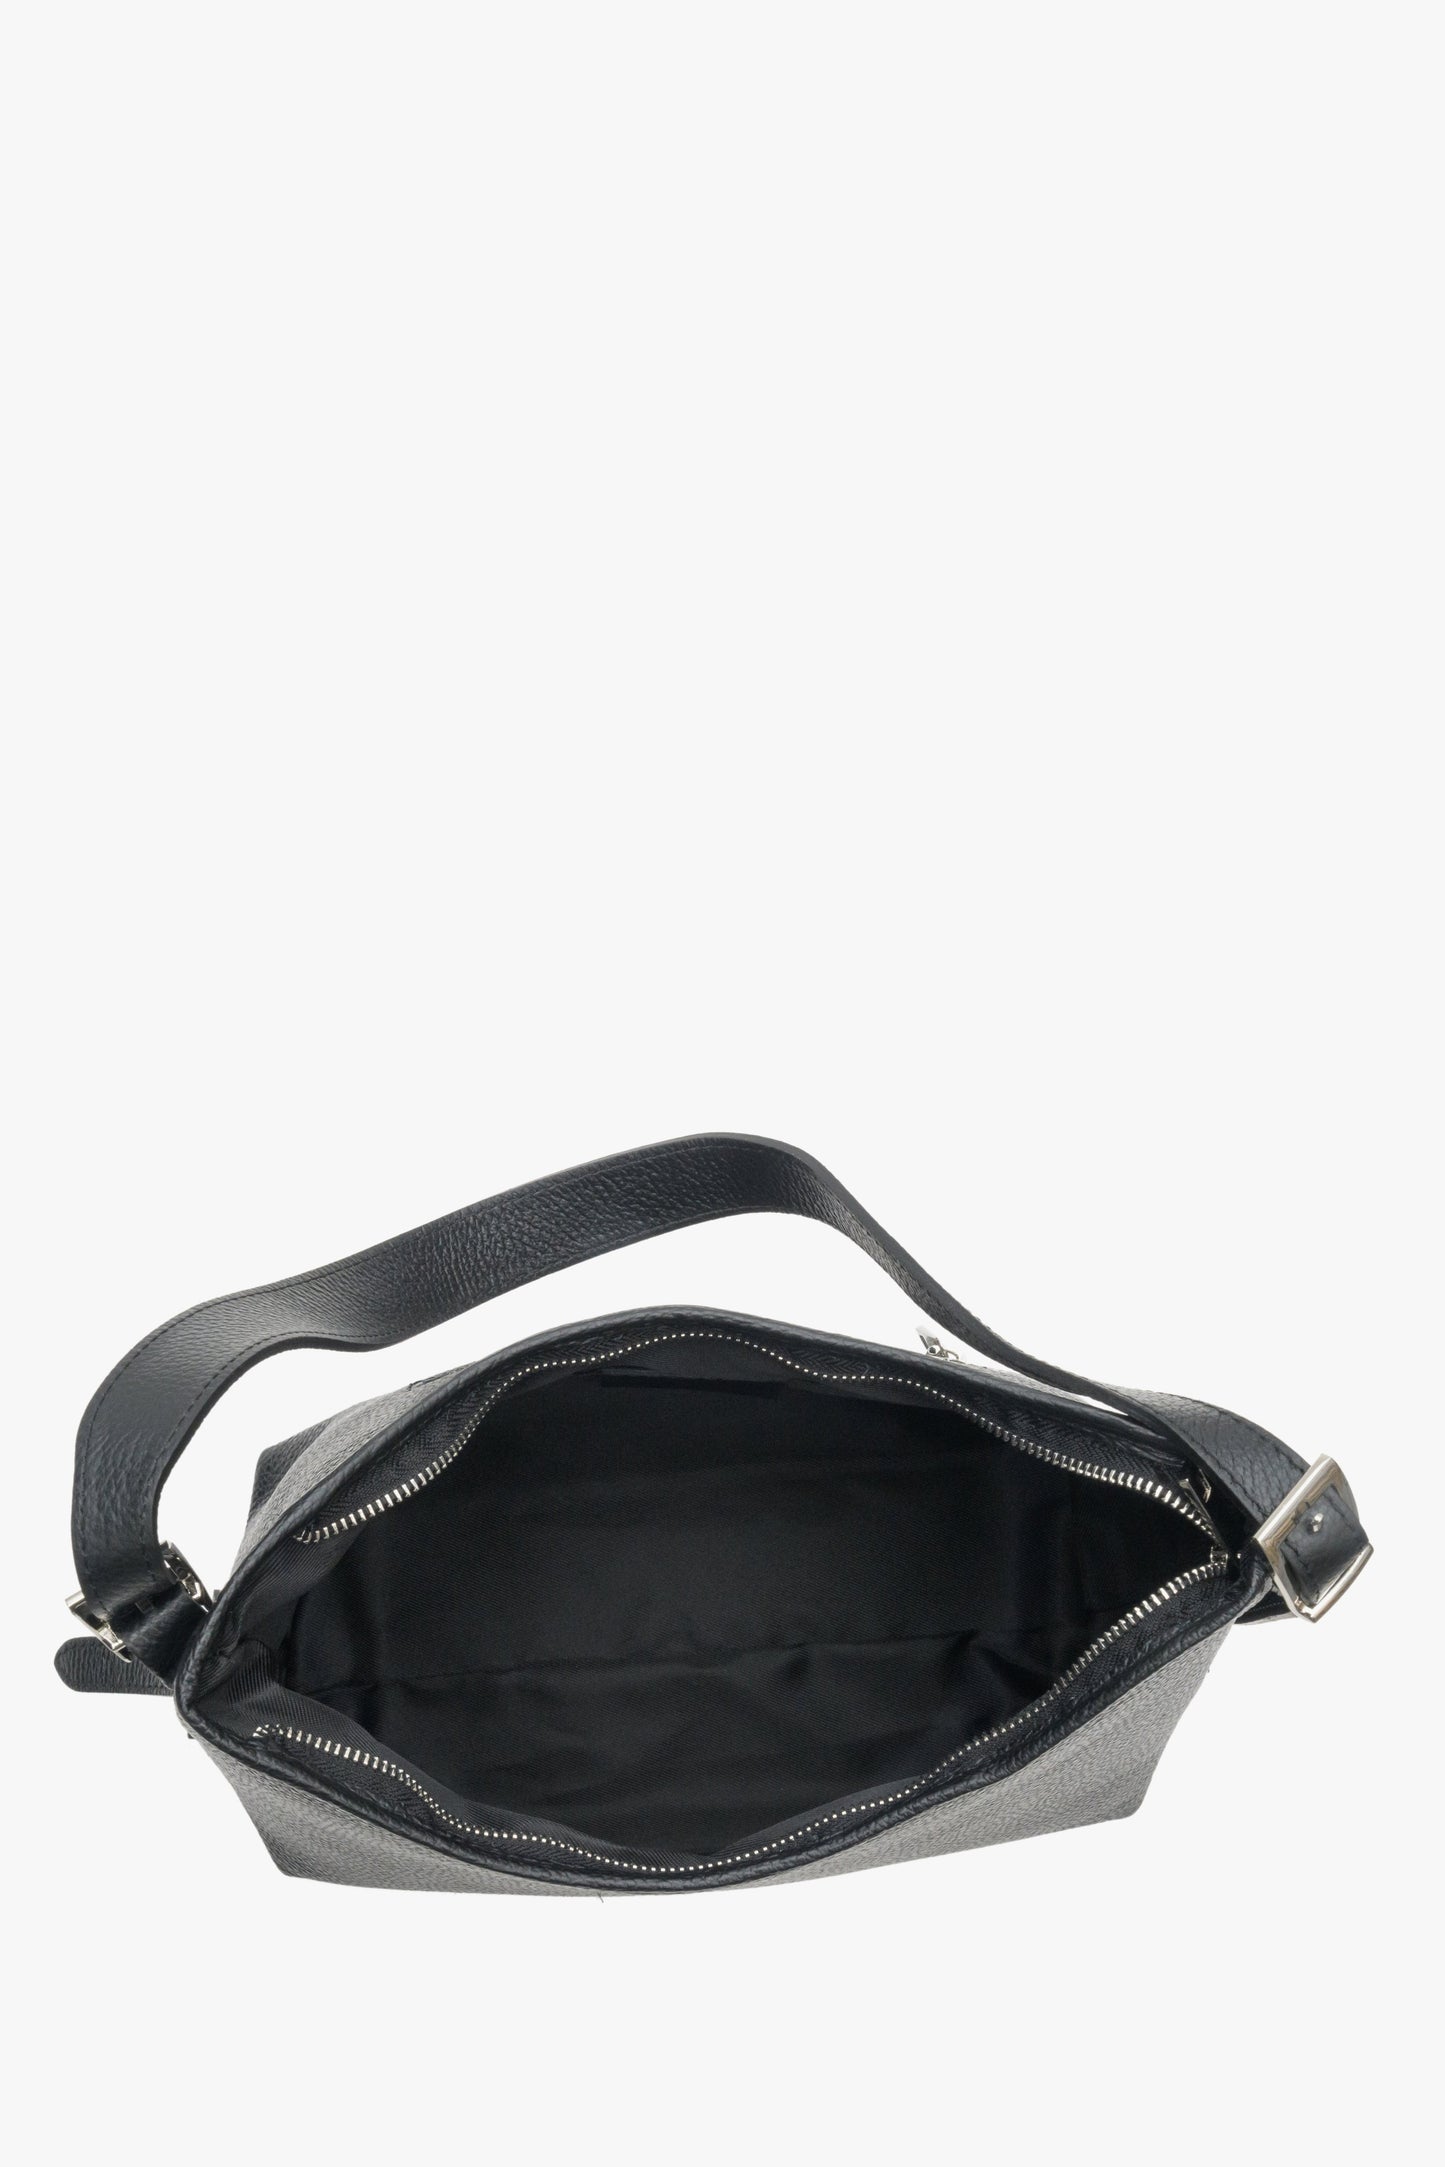 Skórzana, czarna torebka damska Estro ze srebrnymi okuciami - zbliżenie na wnętrze modelu.